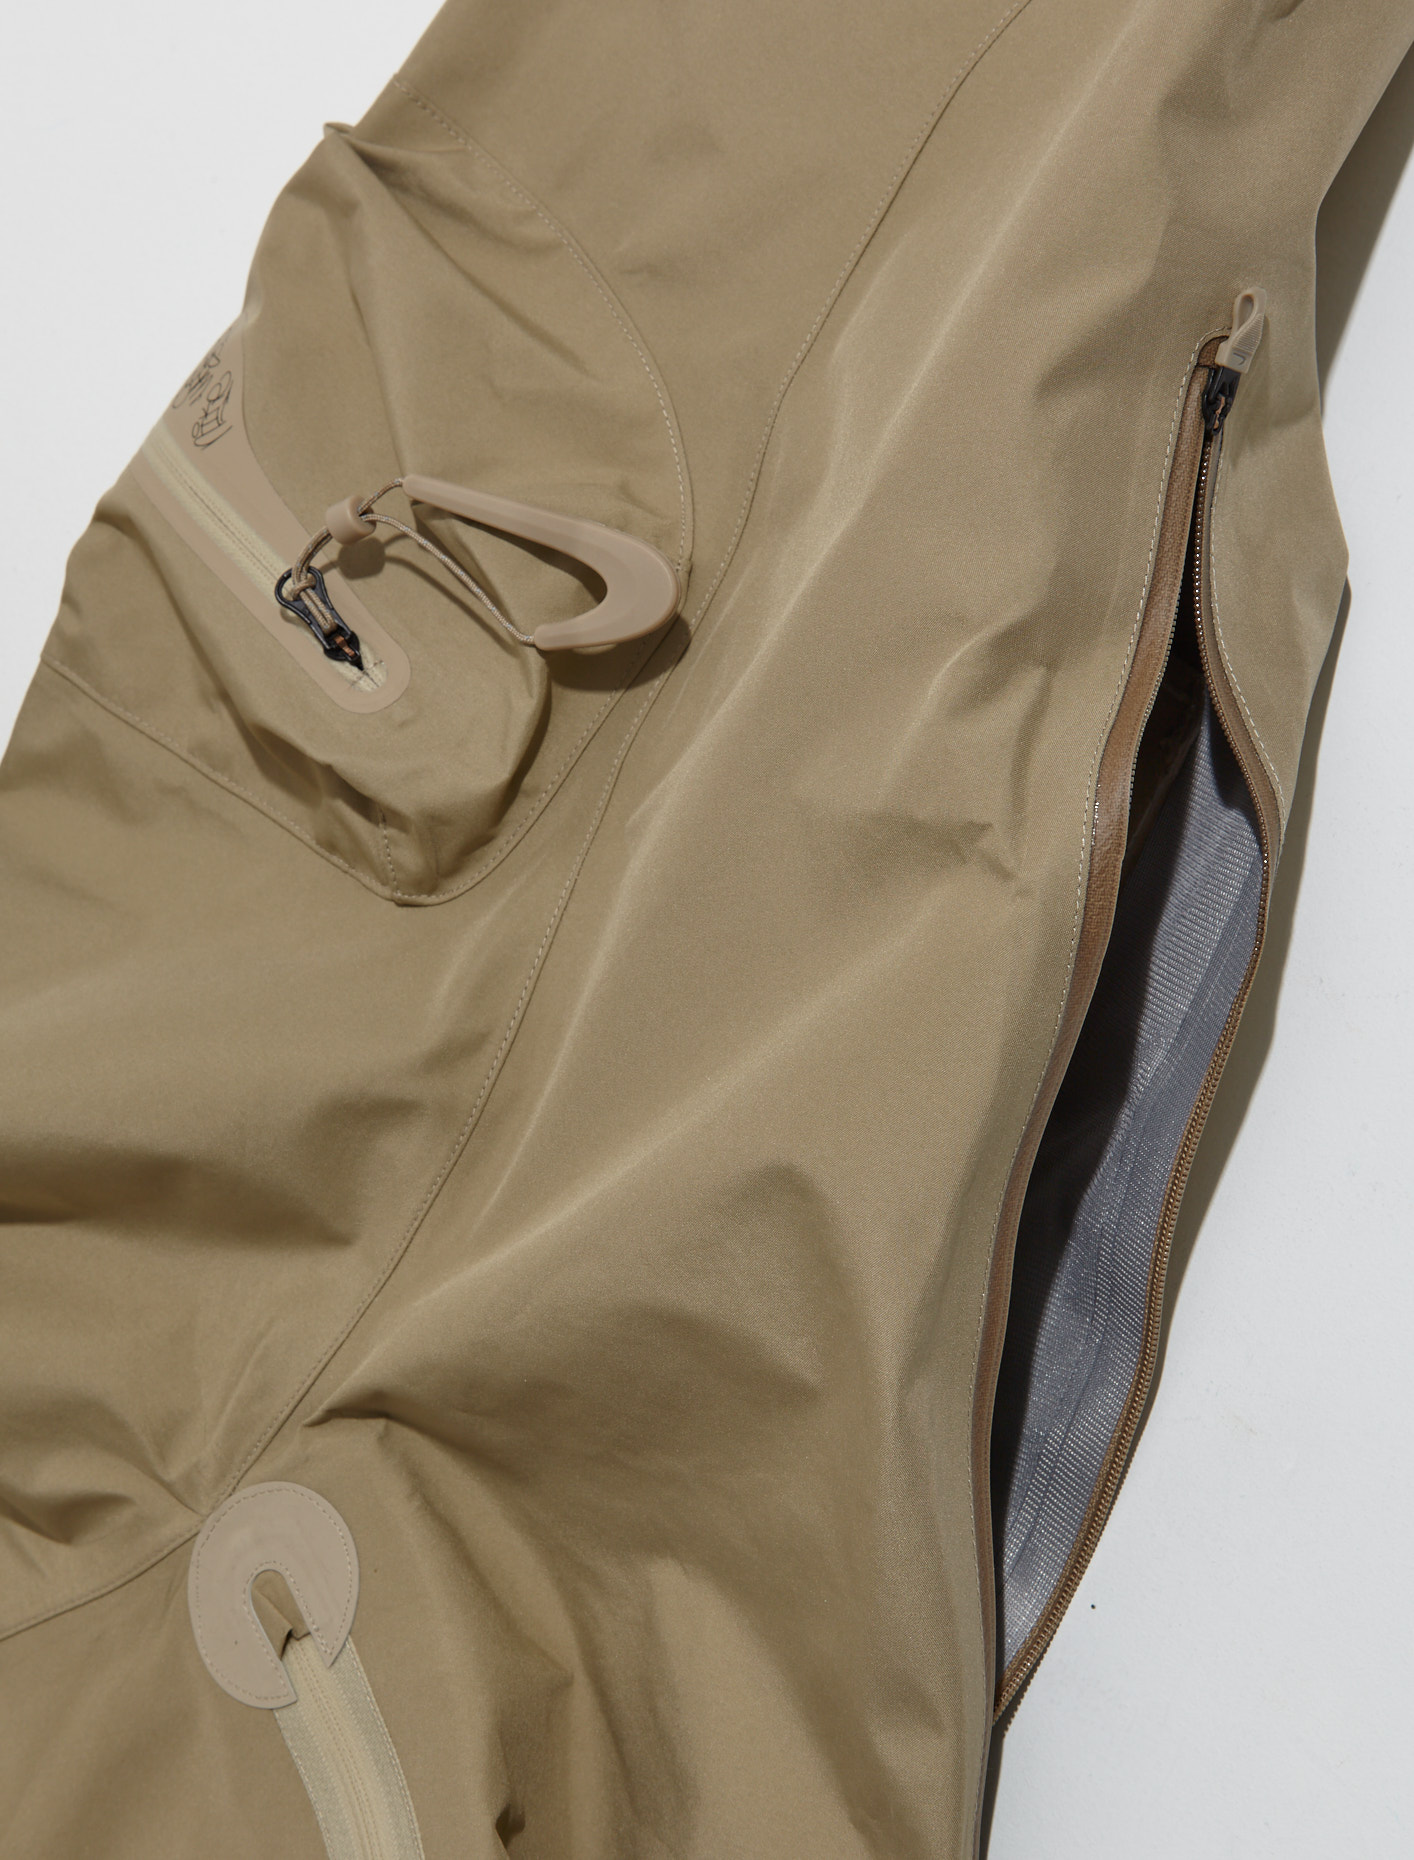 Nike x Off-White Hooded Jacket in Khaki | Voo Store Berlin 